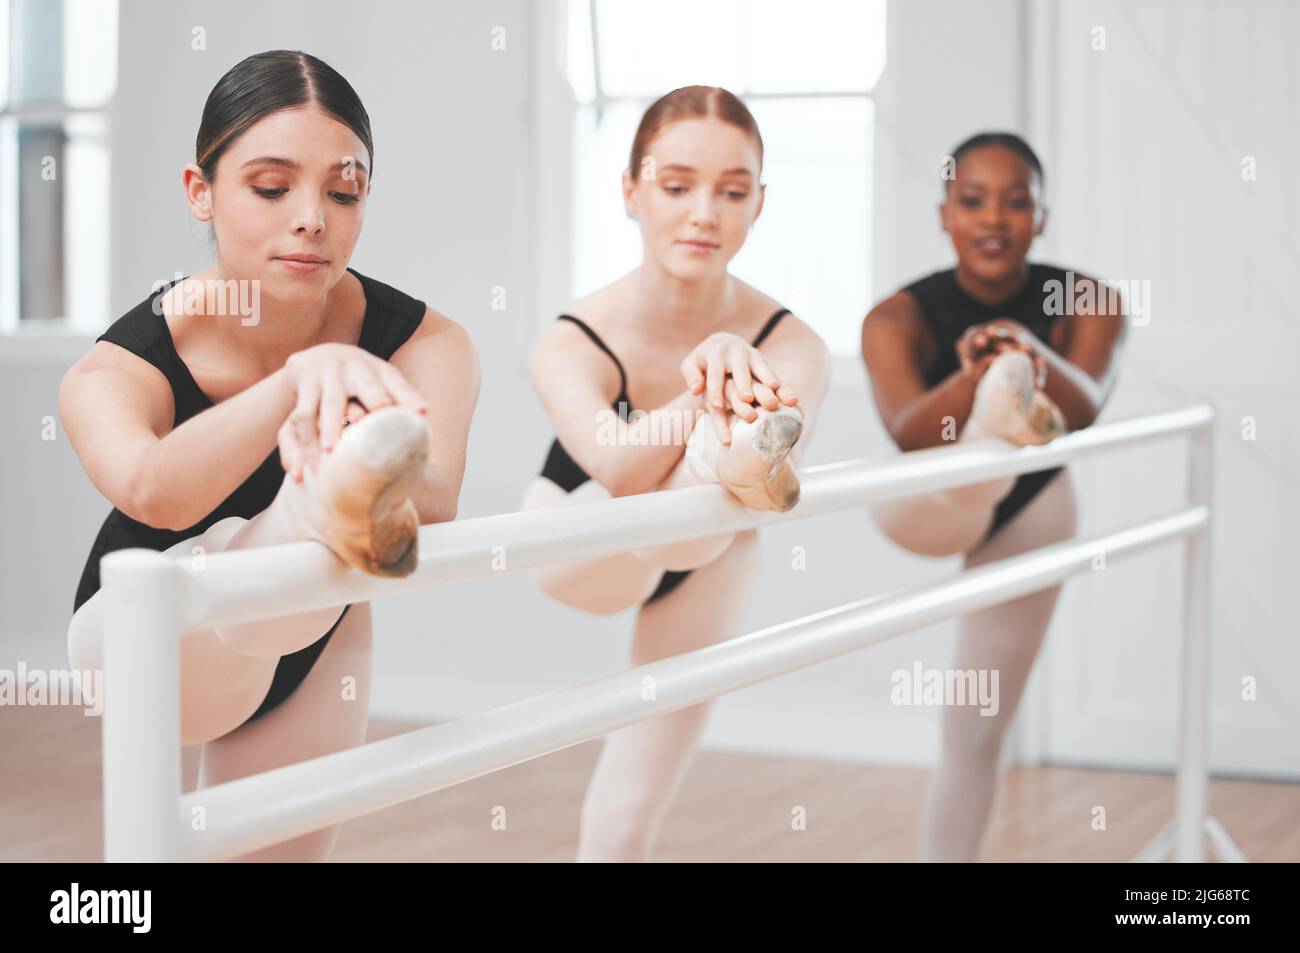 Los grandes bailarines de ballet tienen el talento de hacer que el ballet parezca sin esfuerzo. Plano de un grupo de bailarines de ballet apoyado contra una barra. Foto de stock